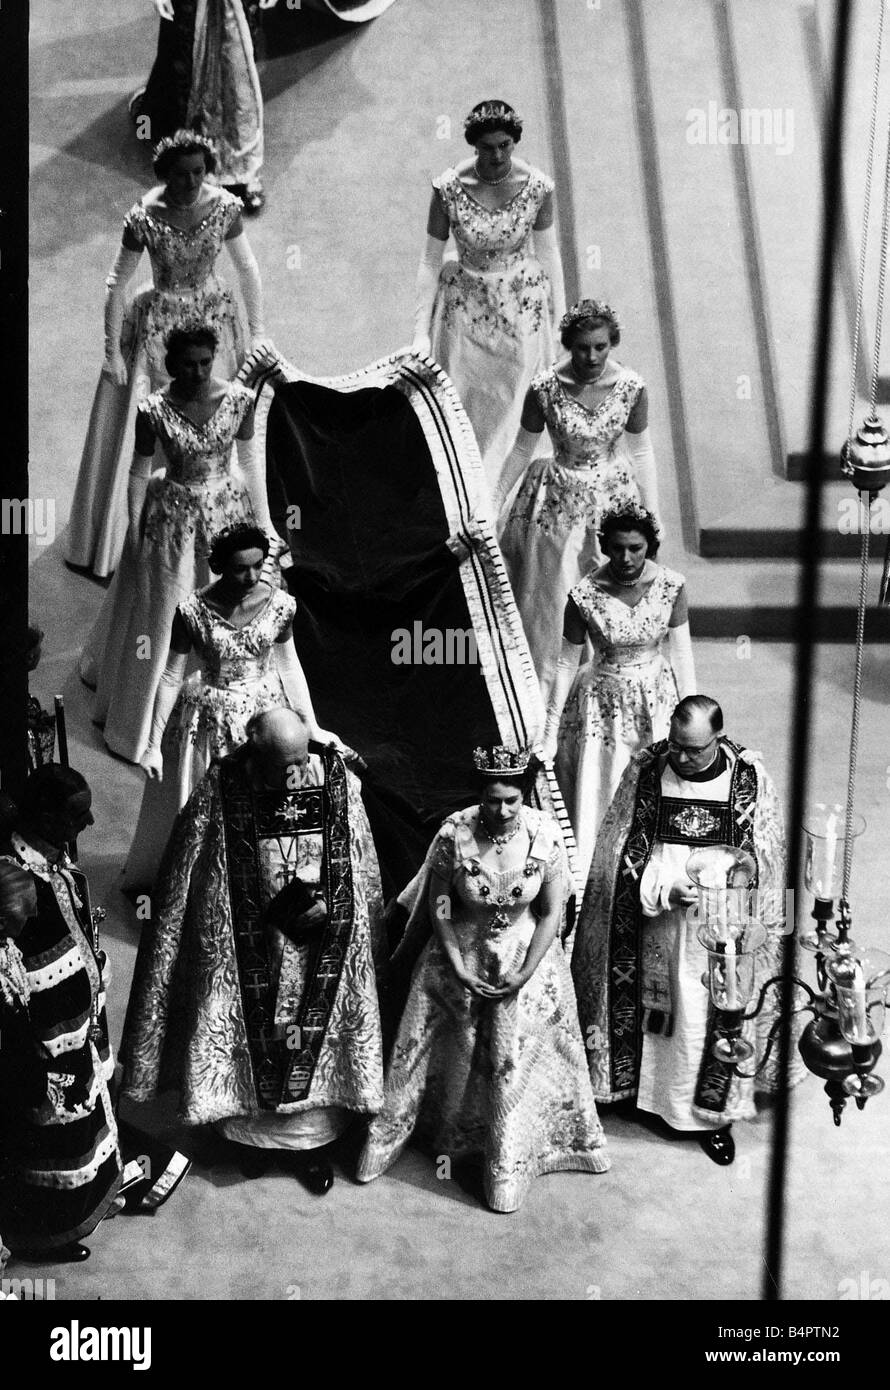 Queen Elizabeth II Coronation Westminster Abbey June 1953 walking down the aisle train carried by women Stock Photo